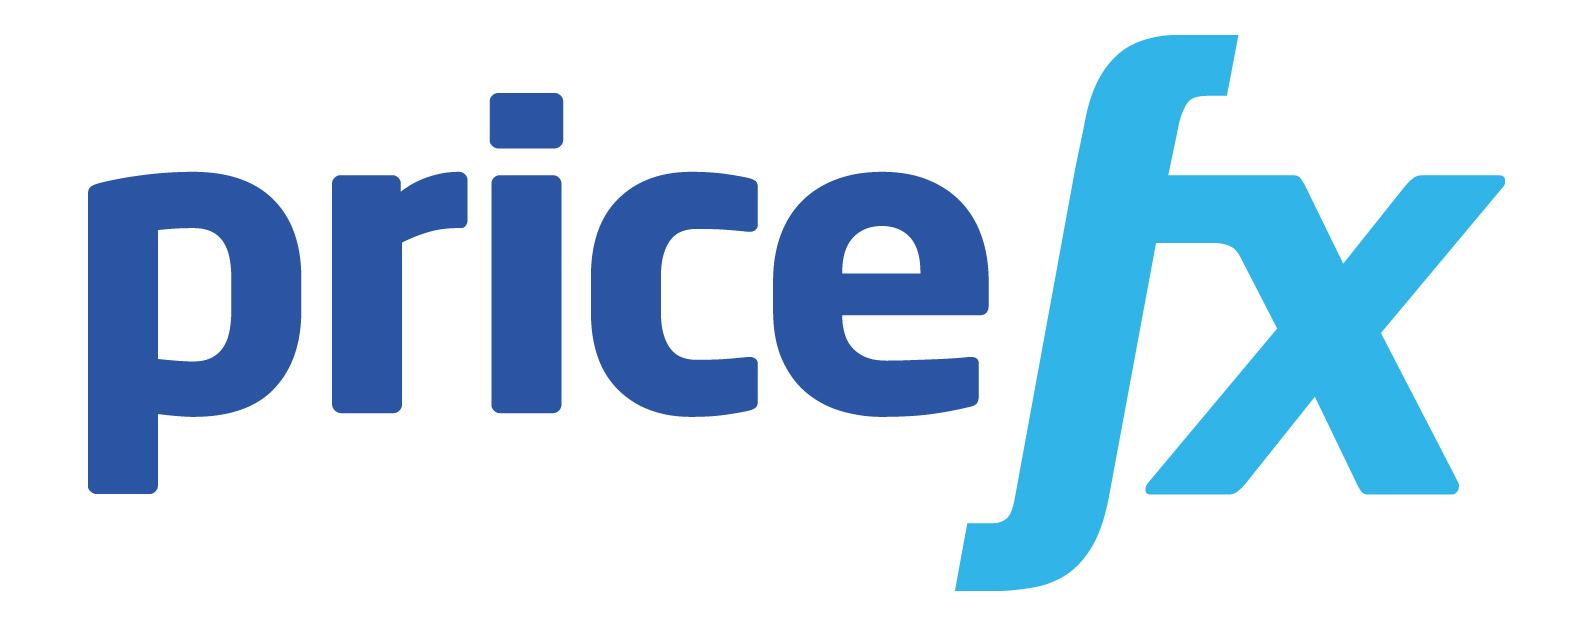 Pricefx logo 2019 Dark blue 1